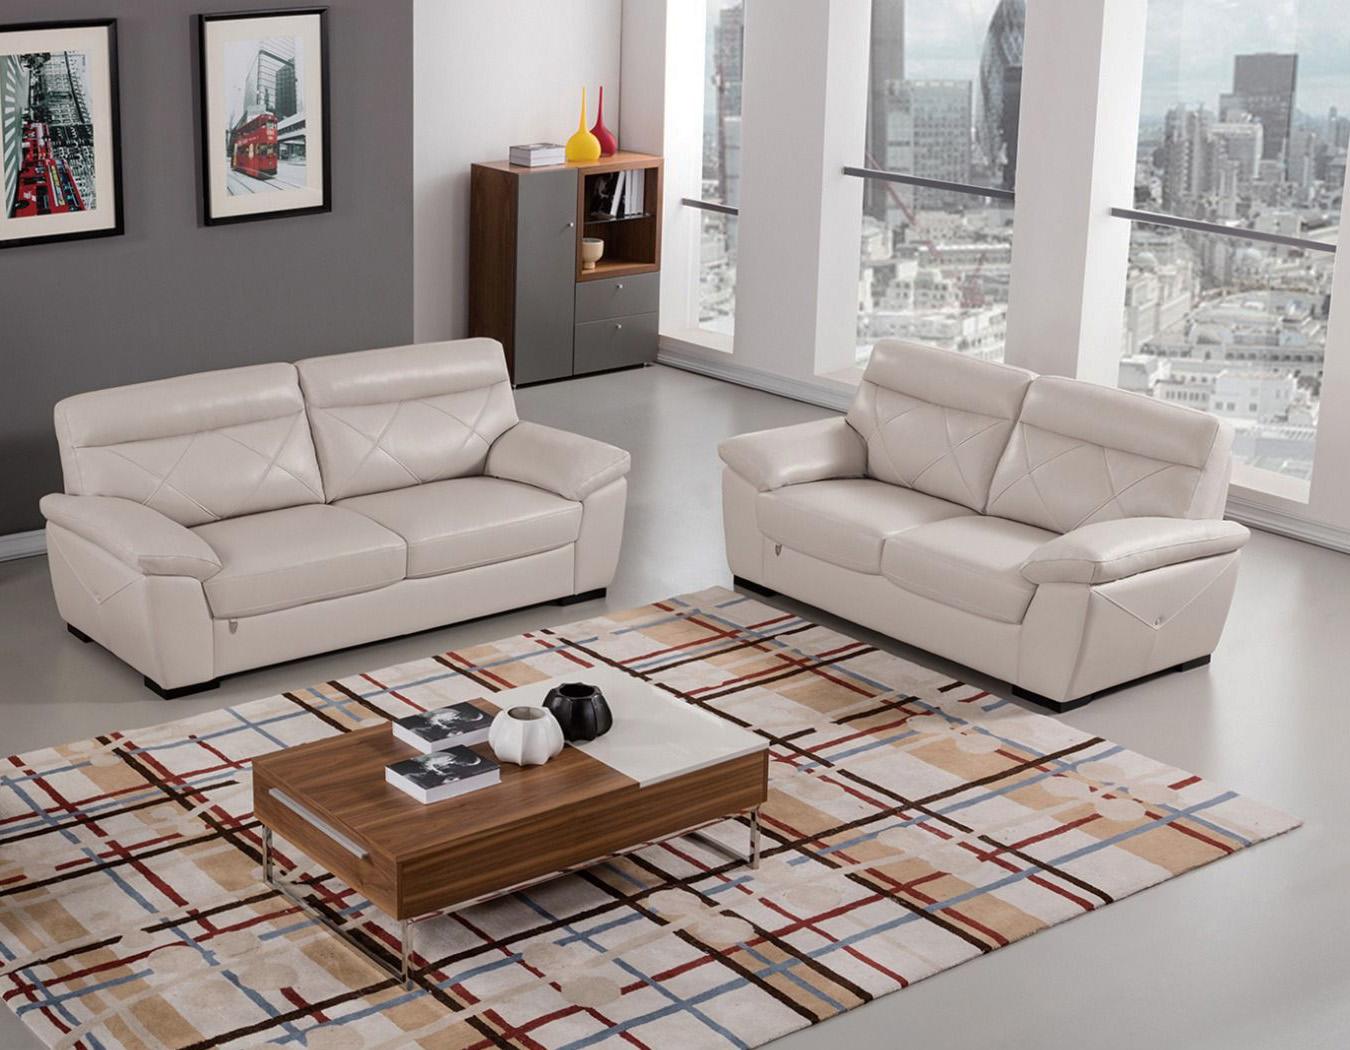 Contemporary, Modern Sofa Set EK081-LG EK081-LG-Set-2 in Light Gray Italian Leather